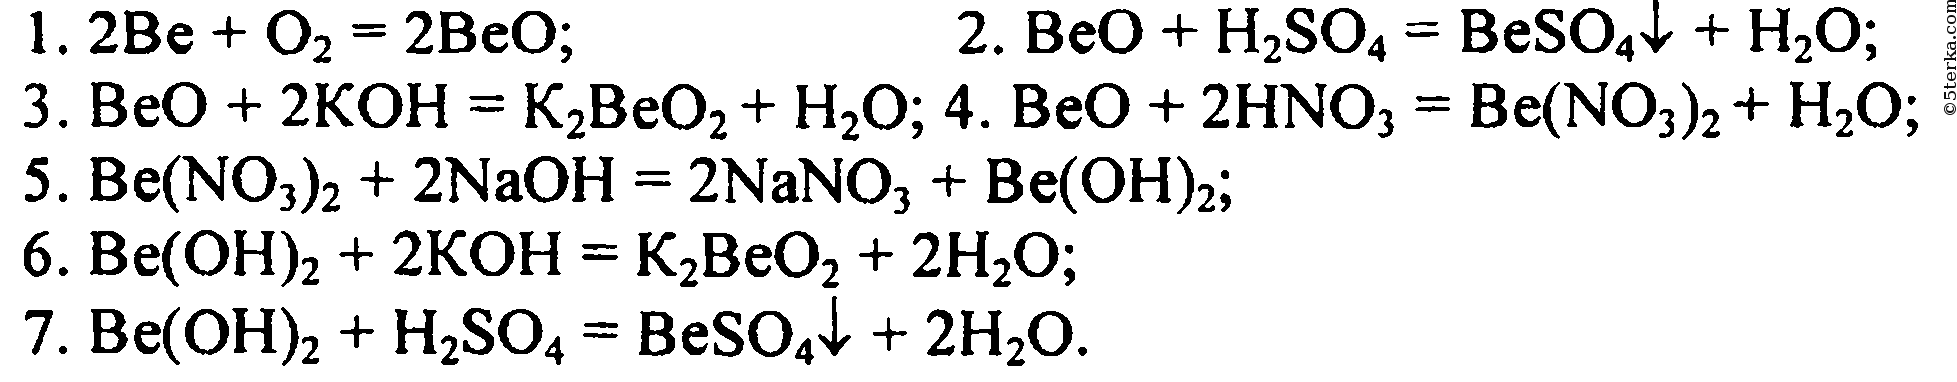 Допишите уравнения химических реакций ba oh 2. Уравнения реакций бериллия. Превращение бериллия. Цепочка превращений с бериллием. Генетический ряд бериллия с уравнениями реакций.